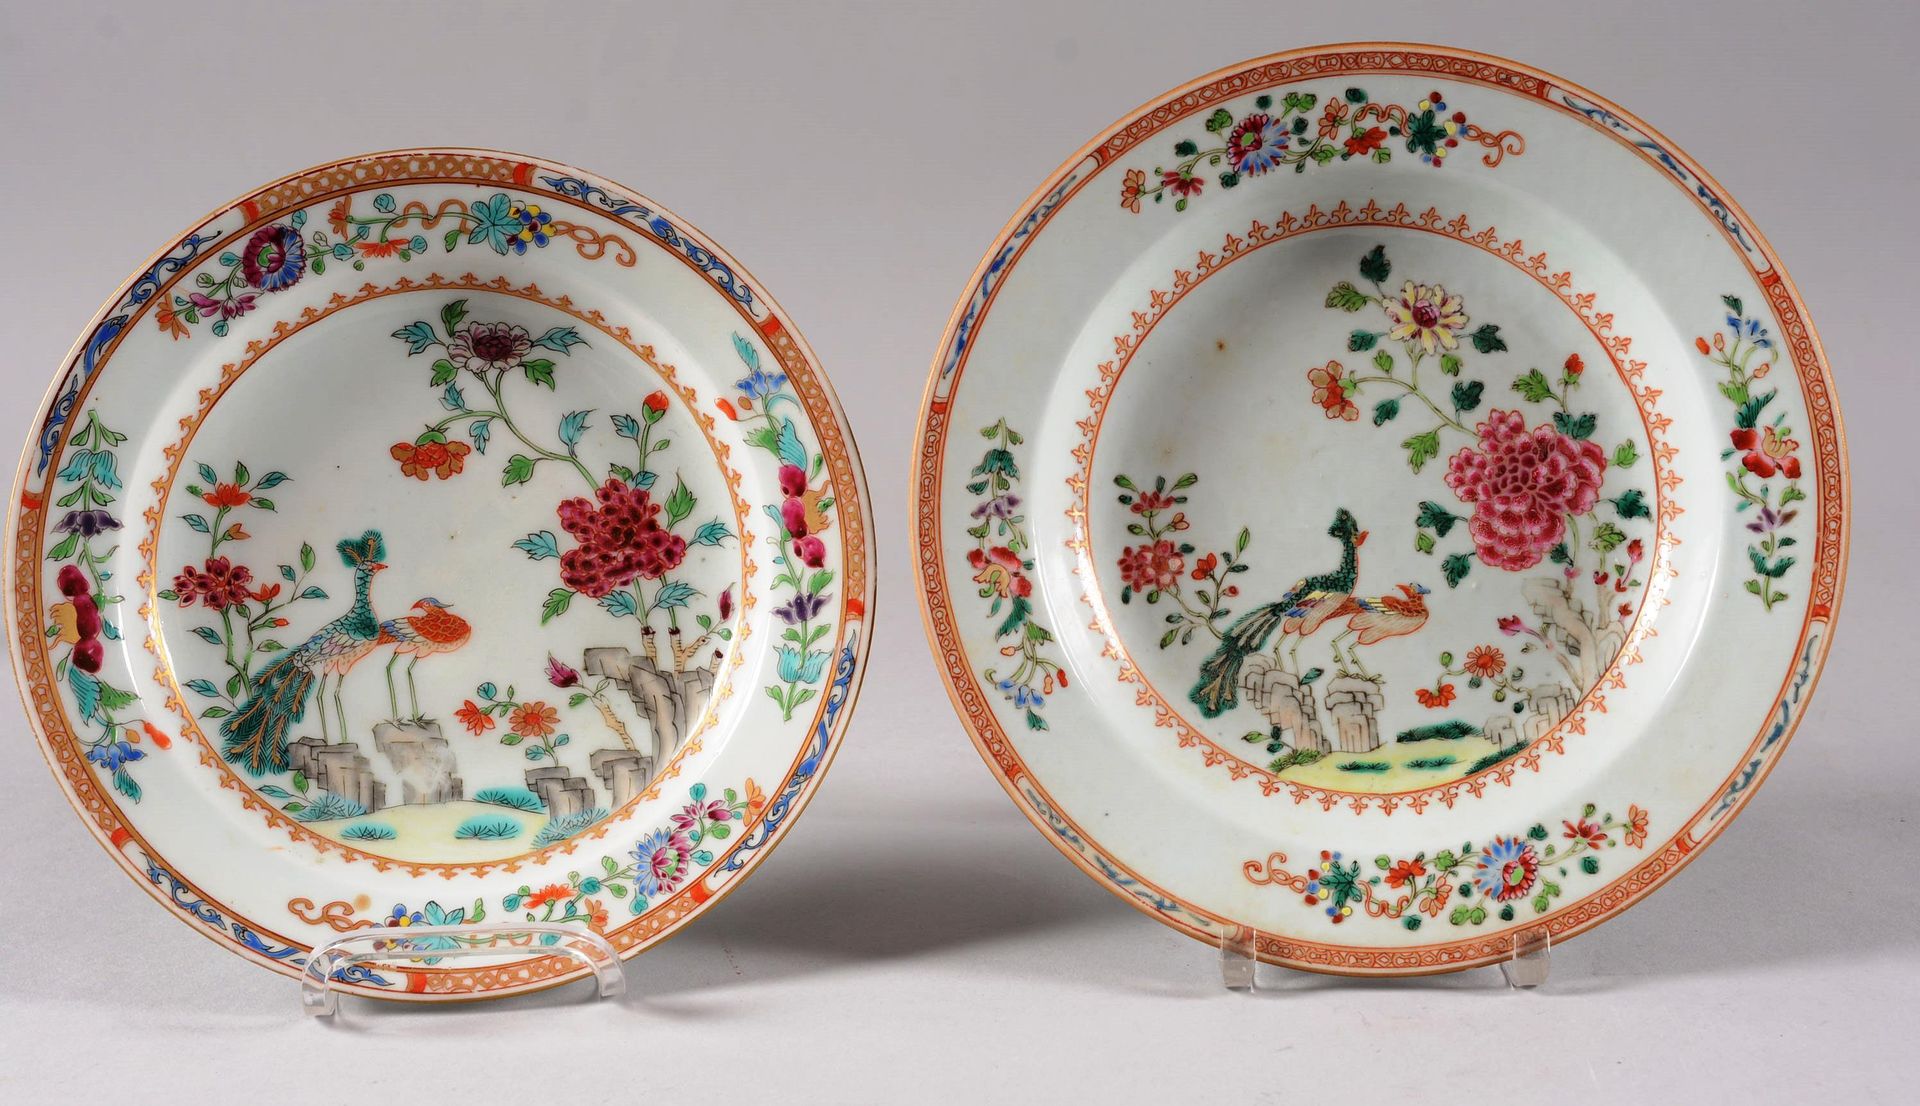 Suite de deux assiettes creuses 中国。

一套两个中国瓷器汤盘，有孔雀装饰。

较大的那根头发。

18世纪。

直径：23厘米